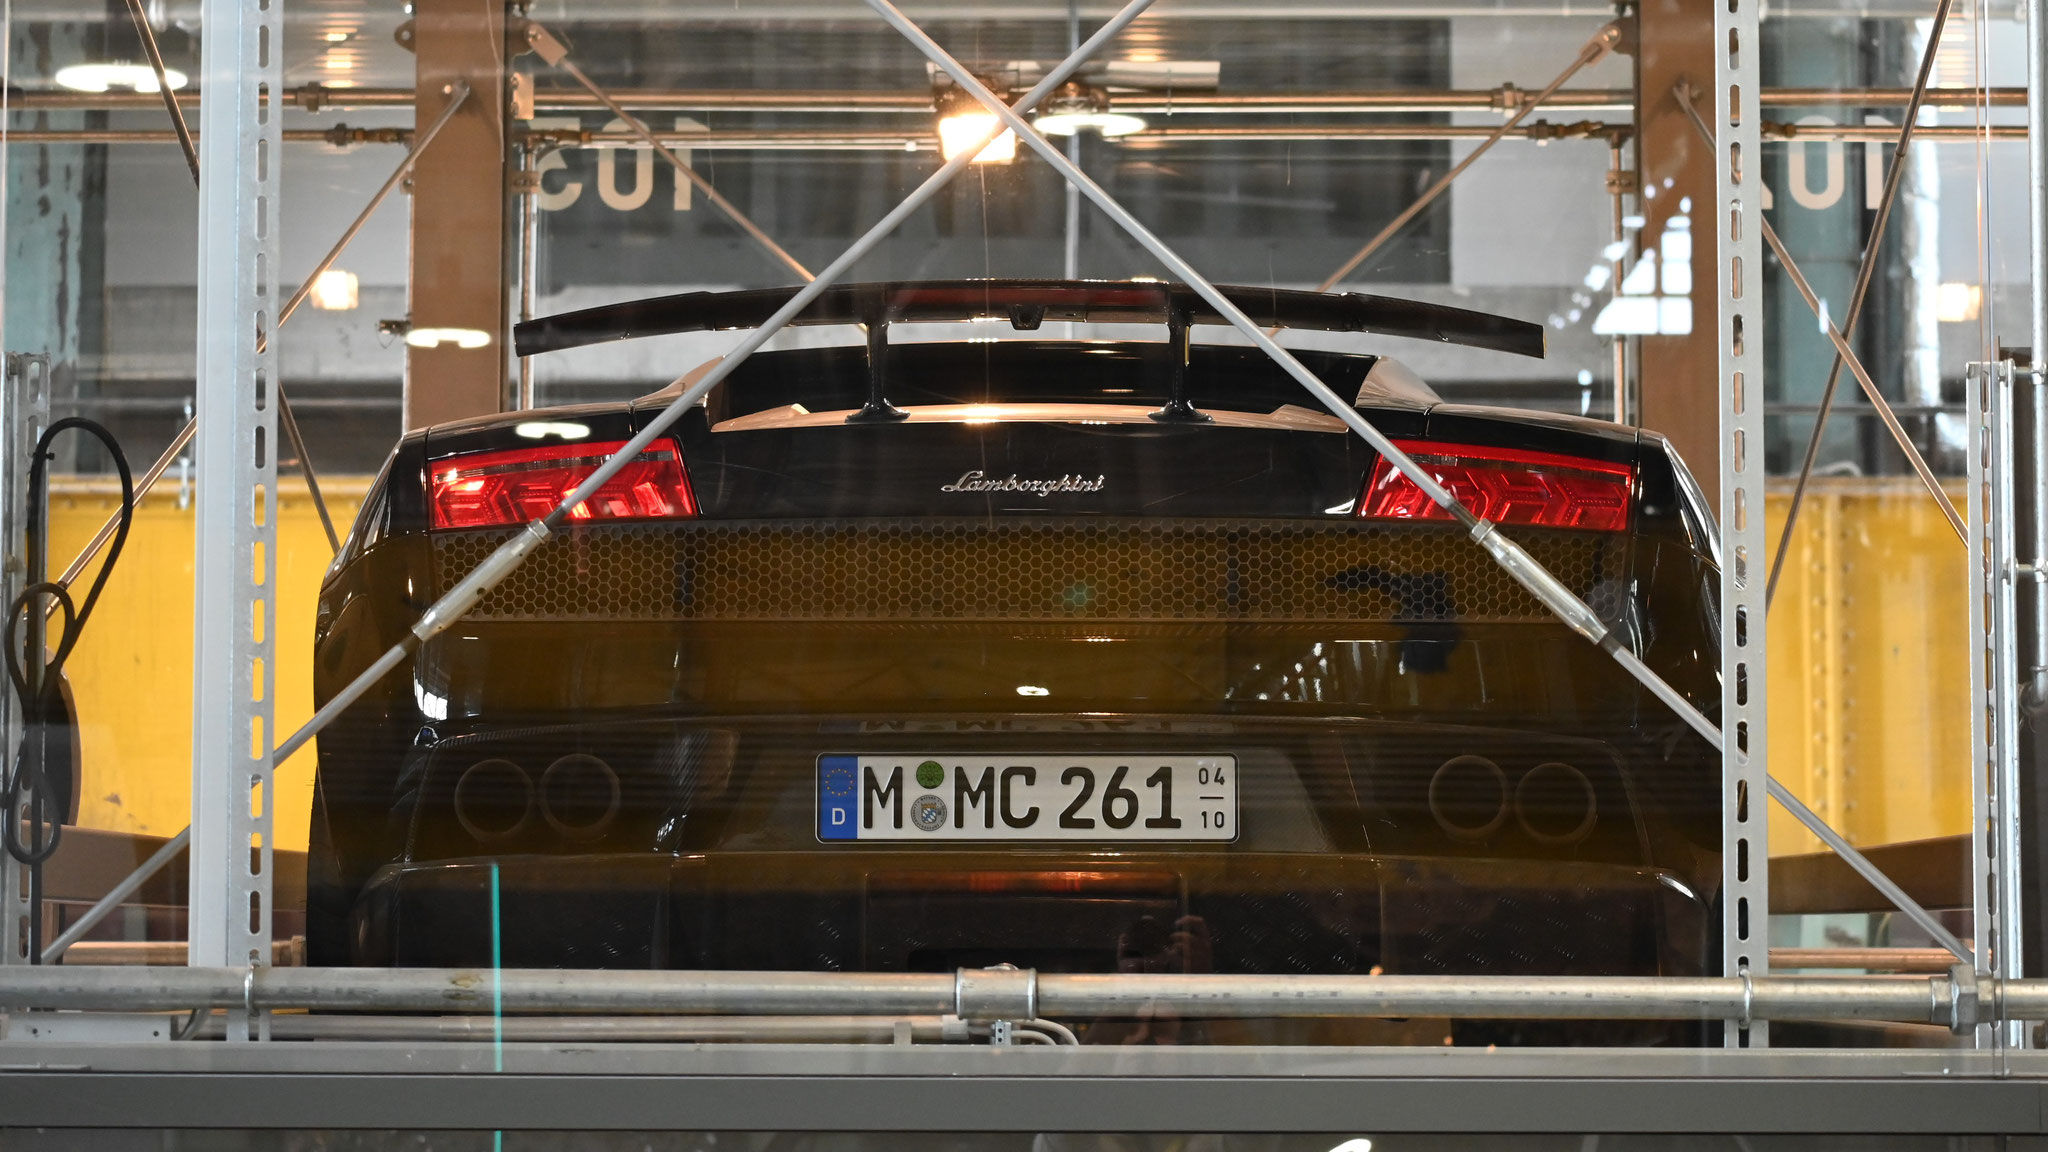 Lamborghini Gallardo Superleggera - M-MC261